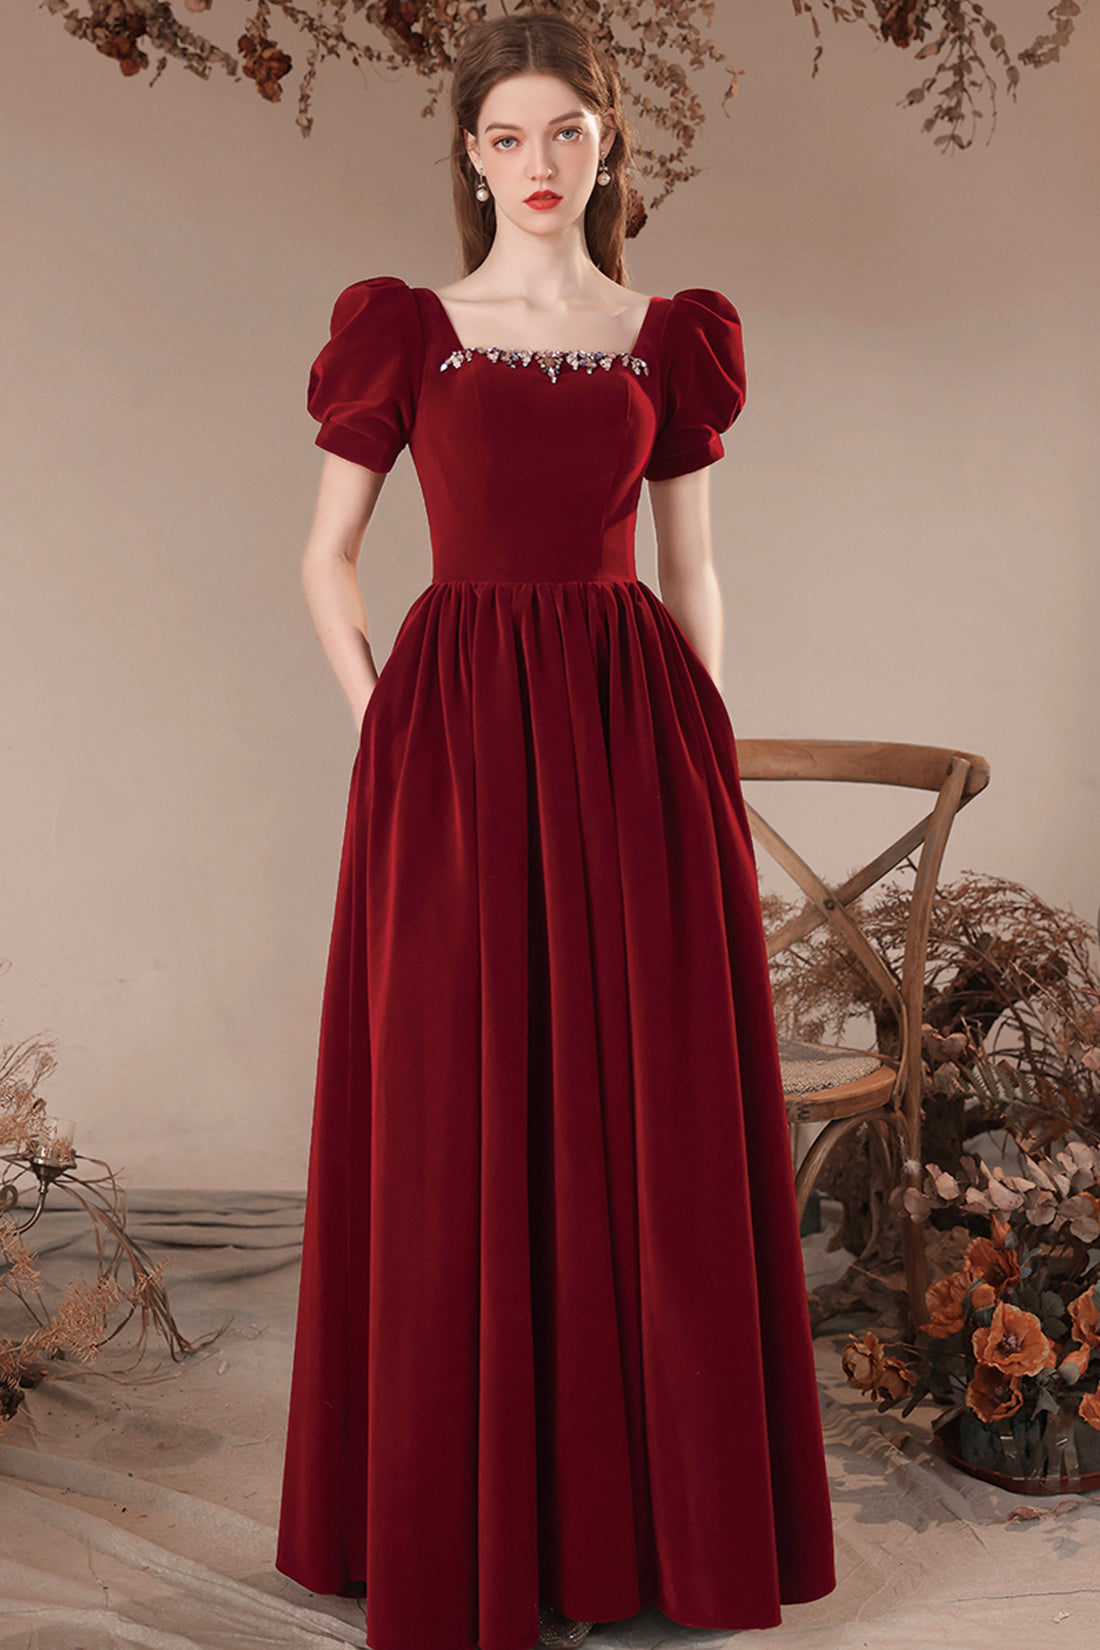 Strapless Long Sleeves Short Burgundy Prom Dresses, Short Wine Red